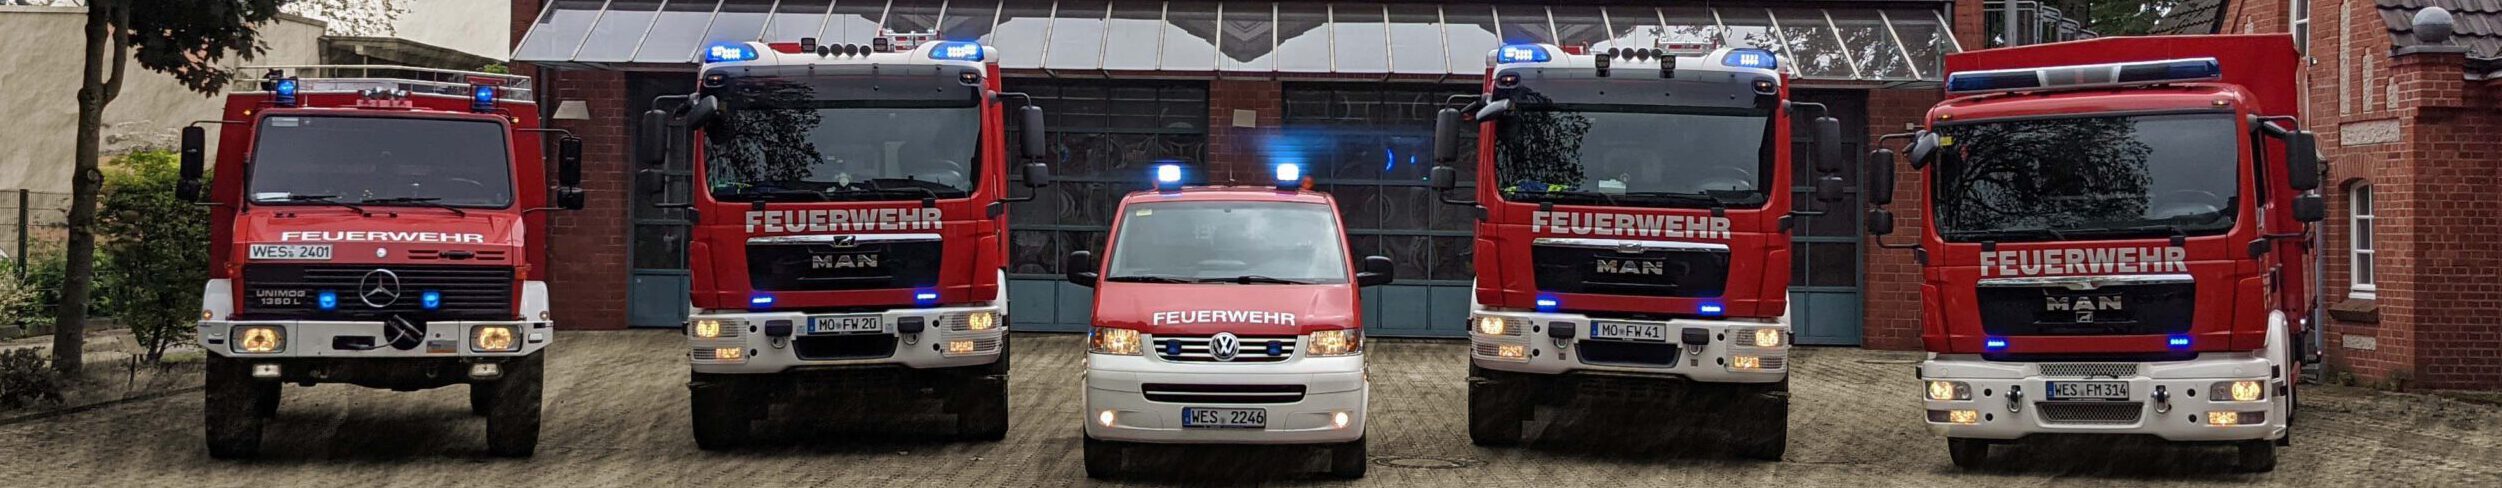 Feuerwehr Scherpenberg